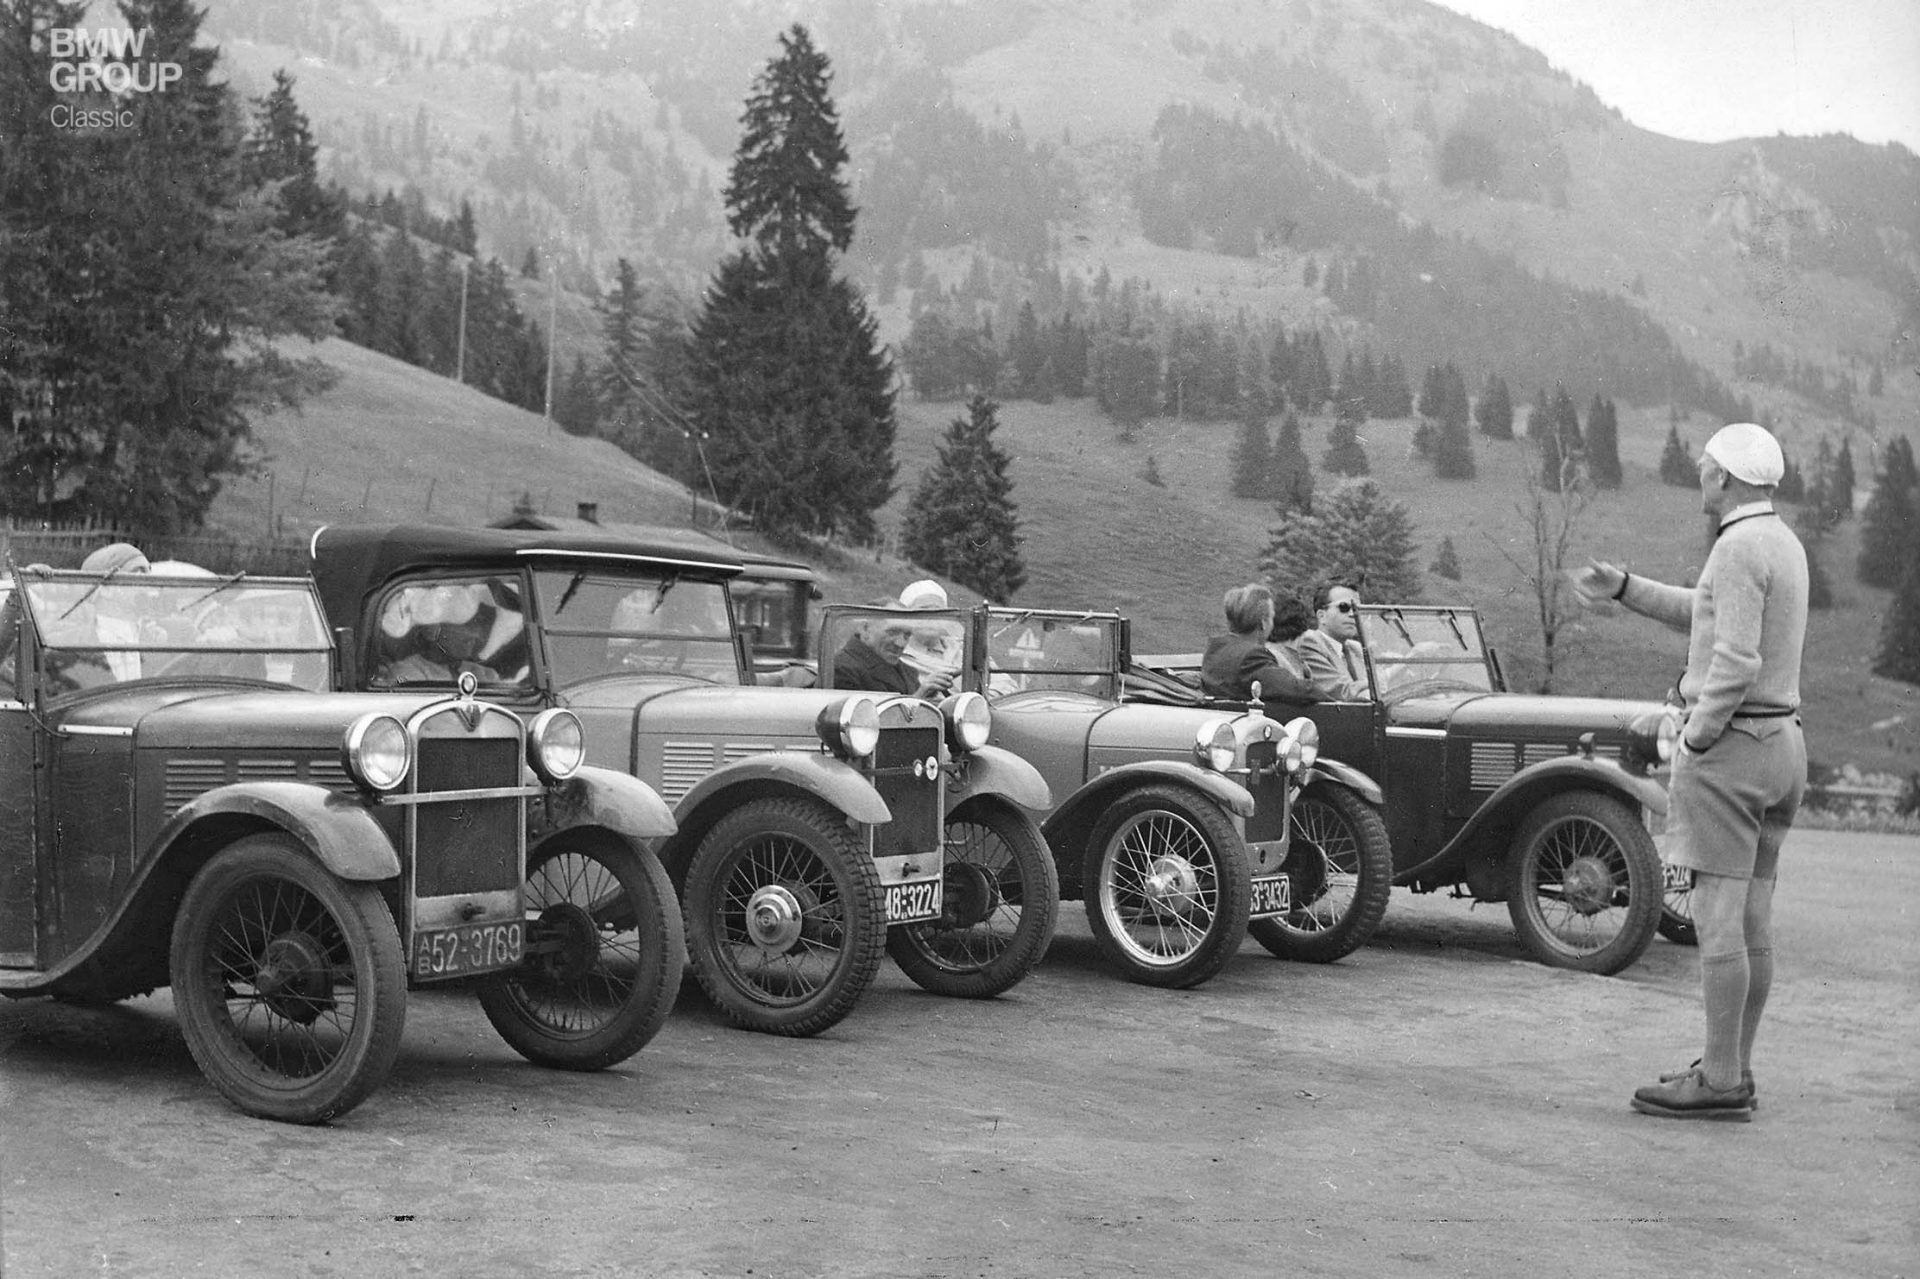 Das allererste BMW Automobil hatte schon früh zahlreiche Fans. Hier verschiedene Modelle auf Ausflugsfahrt 1950.